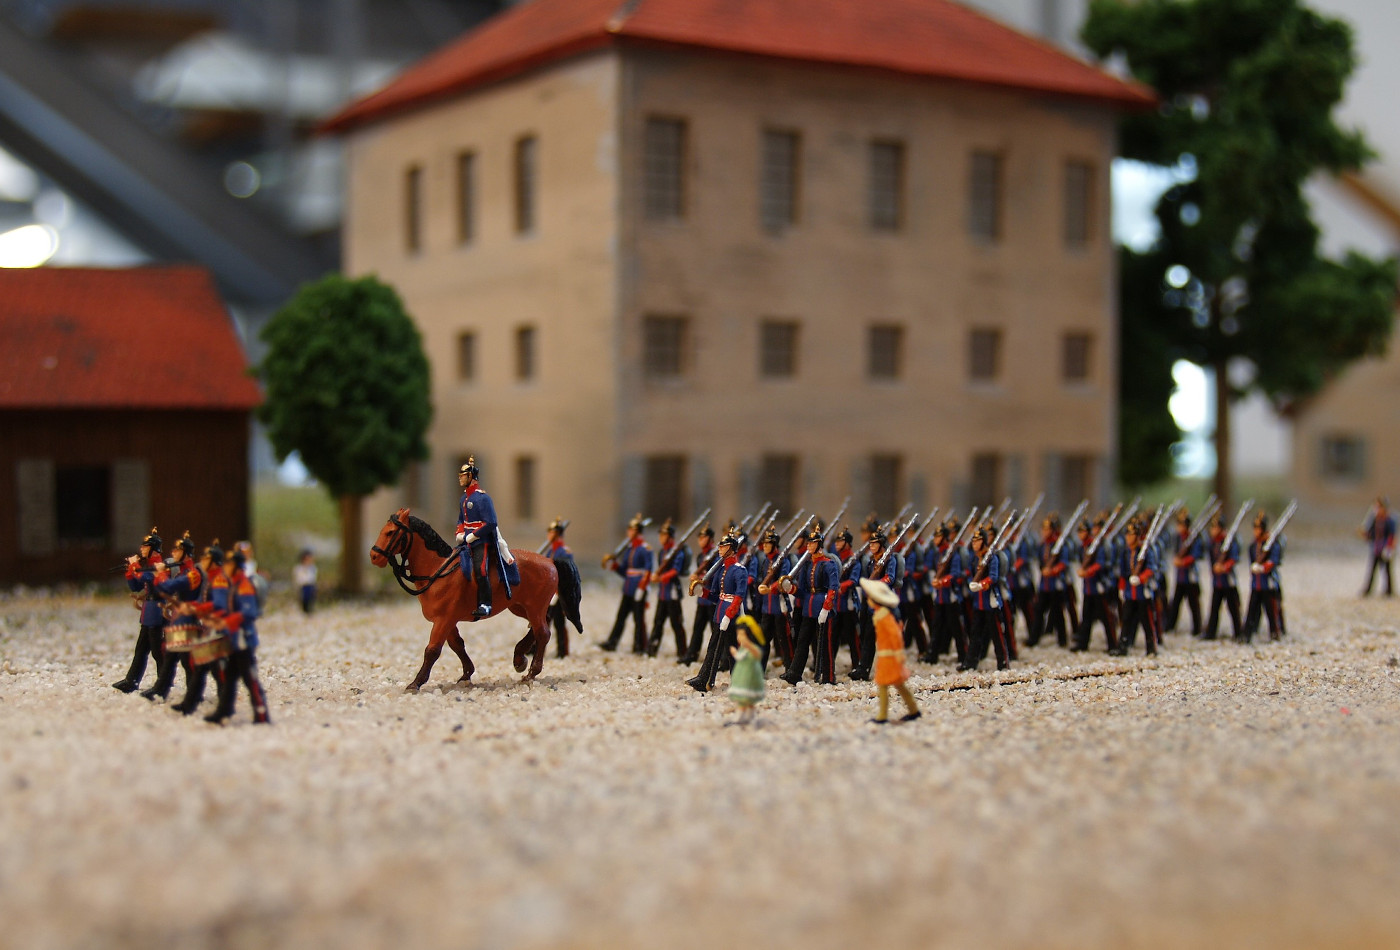 Ein Modell einer Talkaserne mit marschierenden Miniatur-Soldaten